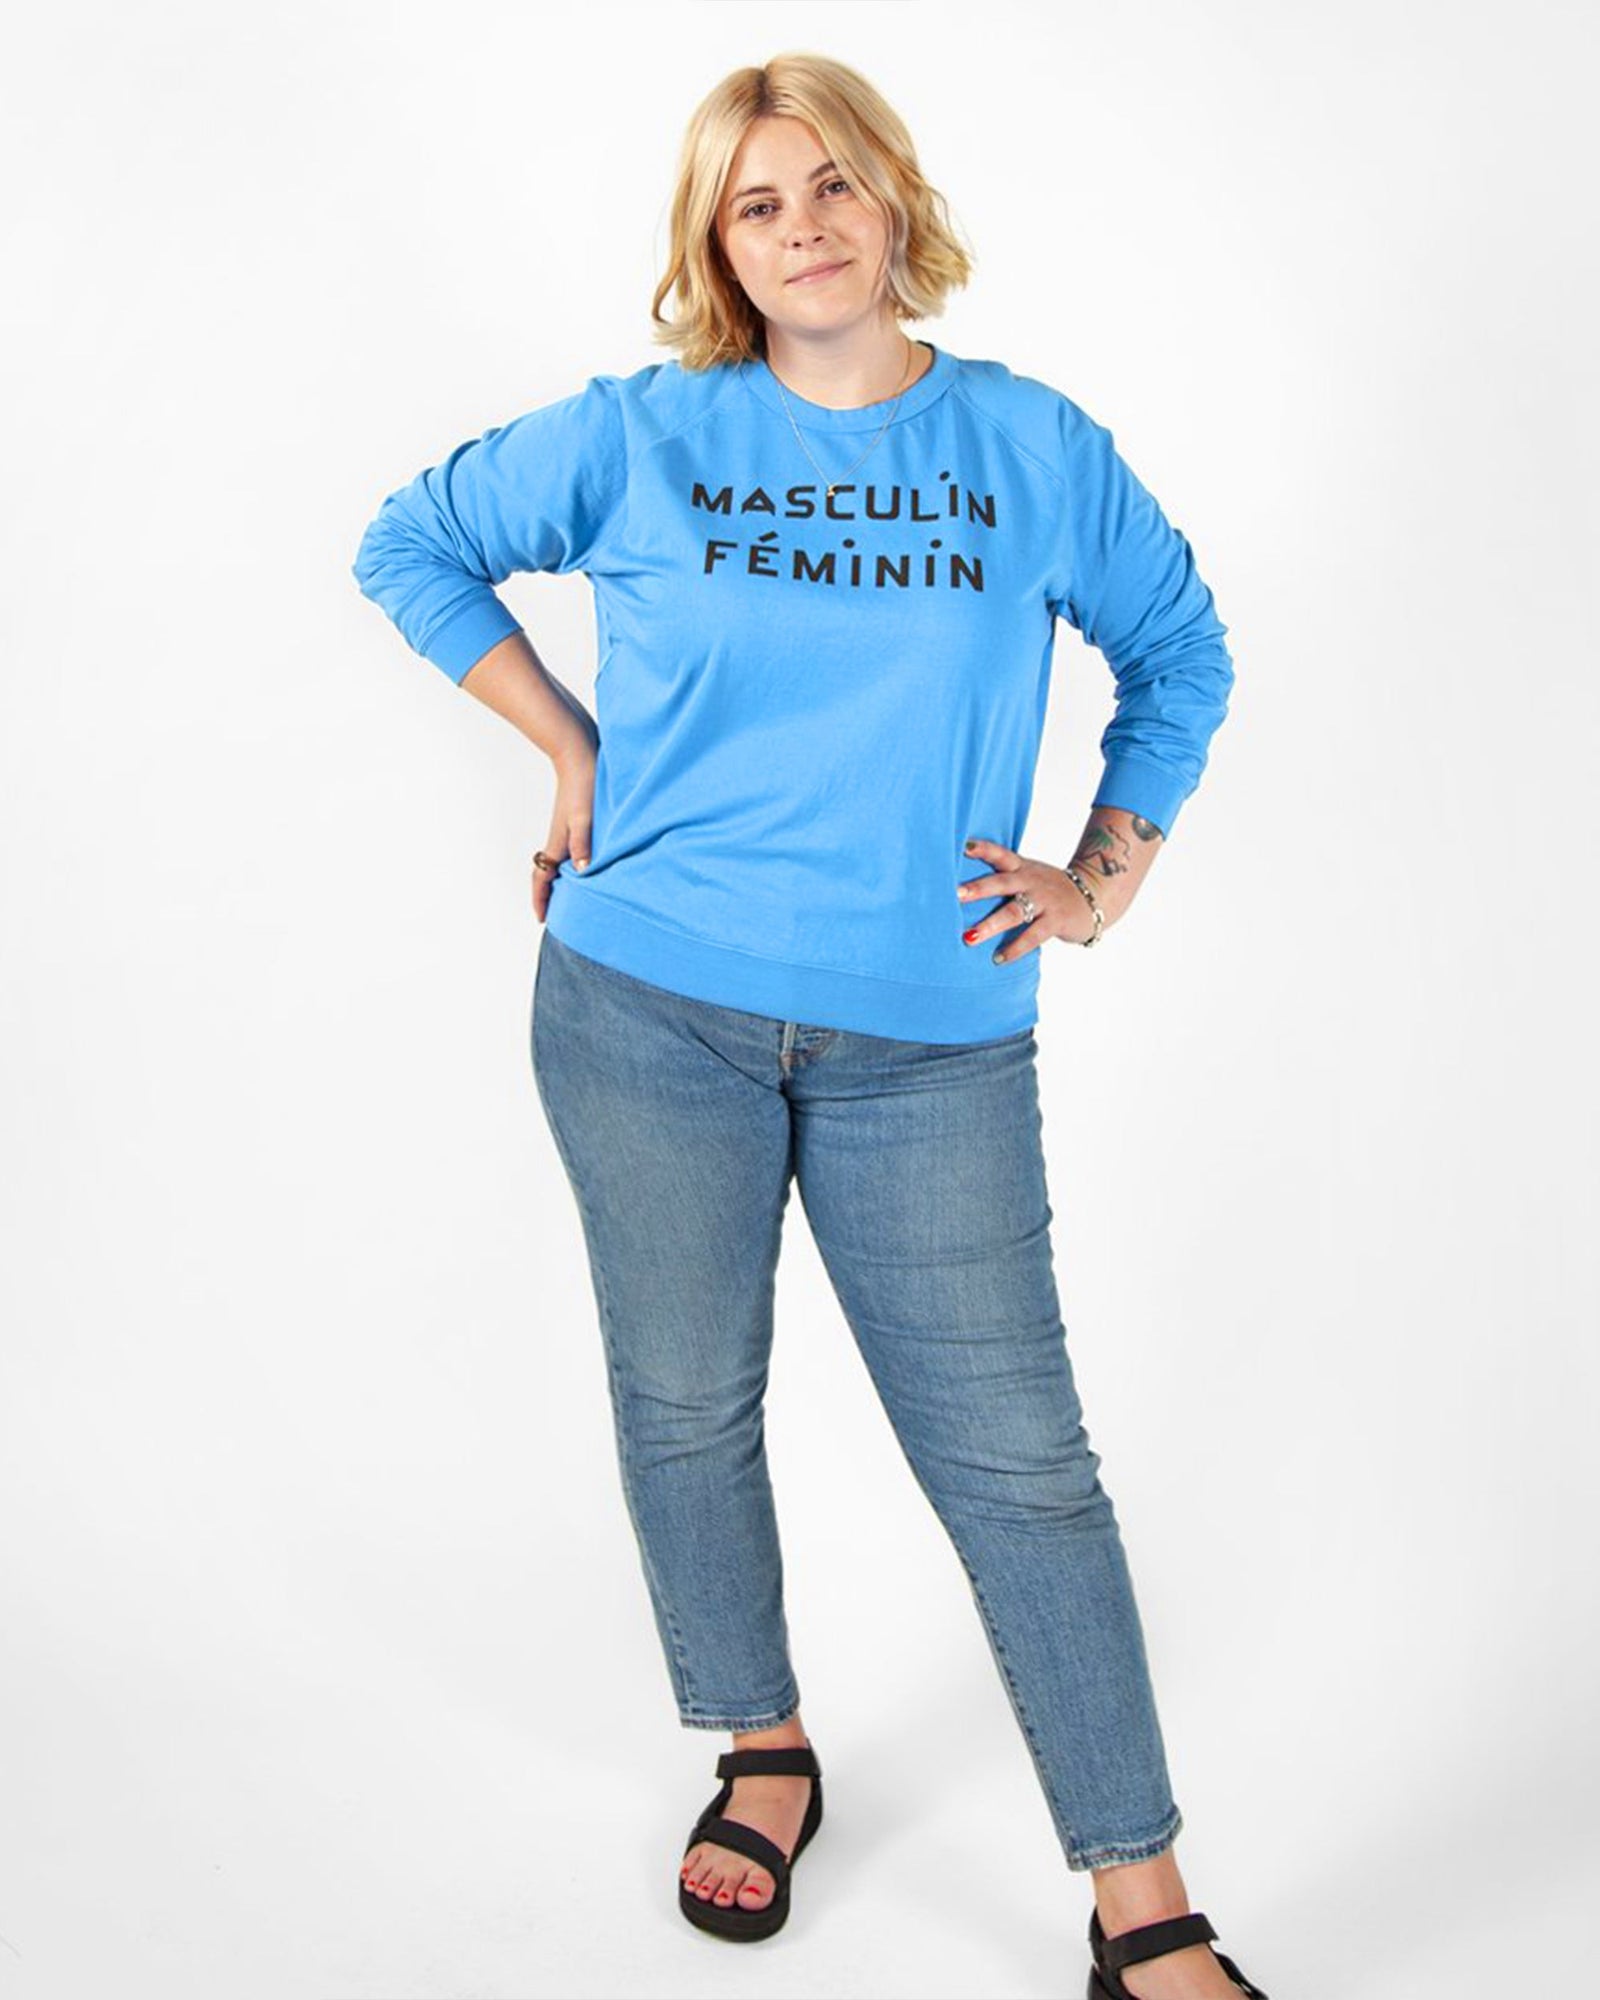 Blue Masculin Feminin Sweatshirt on Brooke